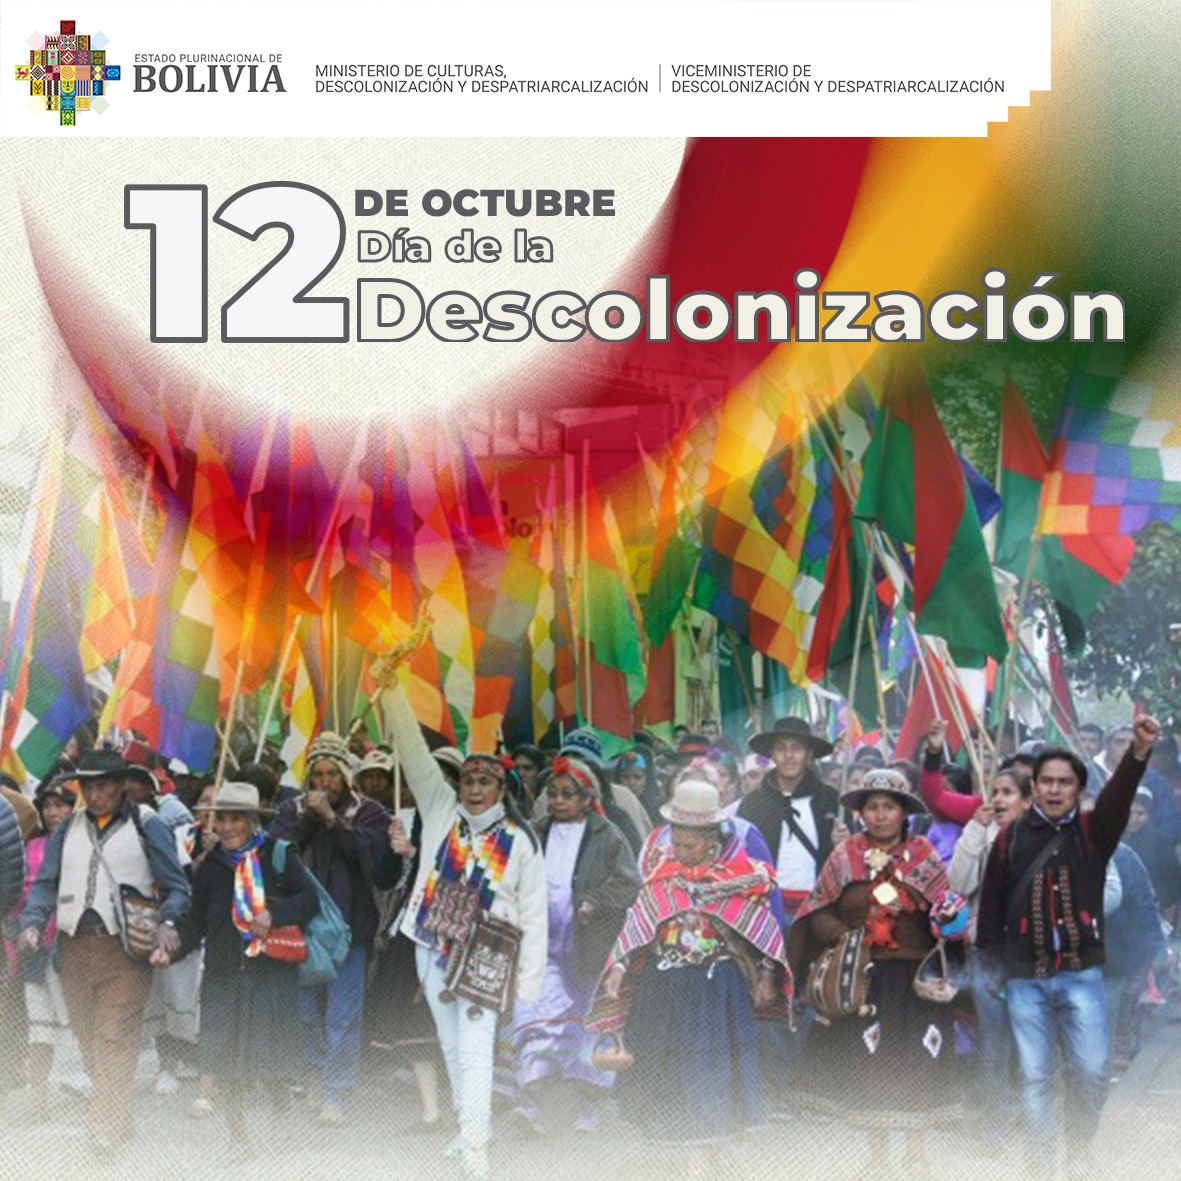 12 de octubre, “Día de la Descolonización en el Estado Plurinacional de Bolivia”